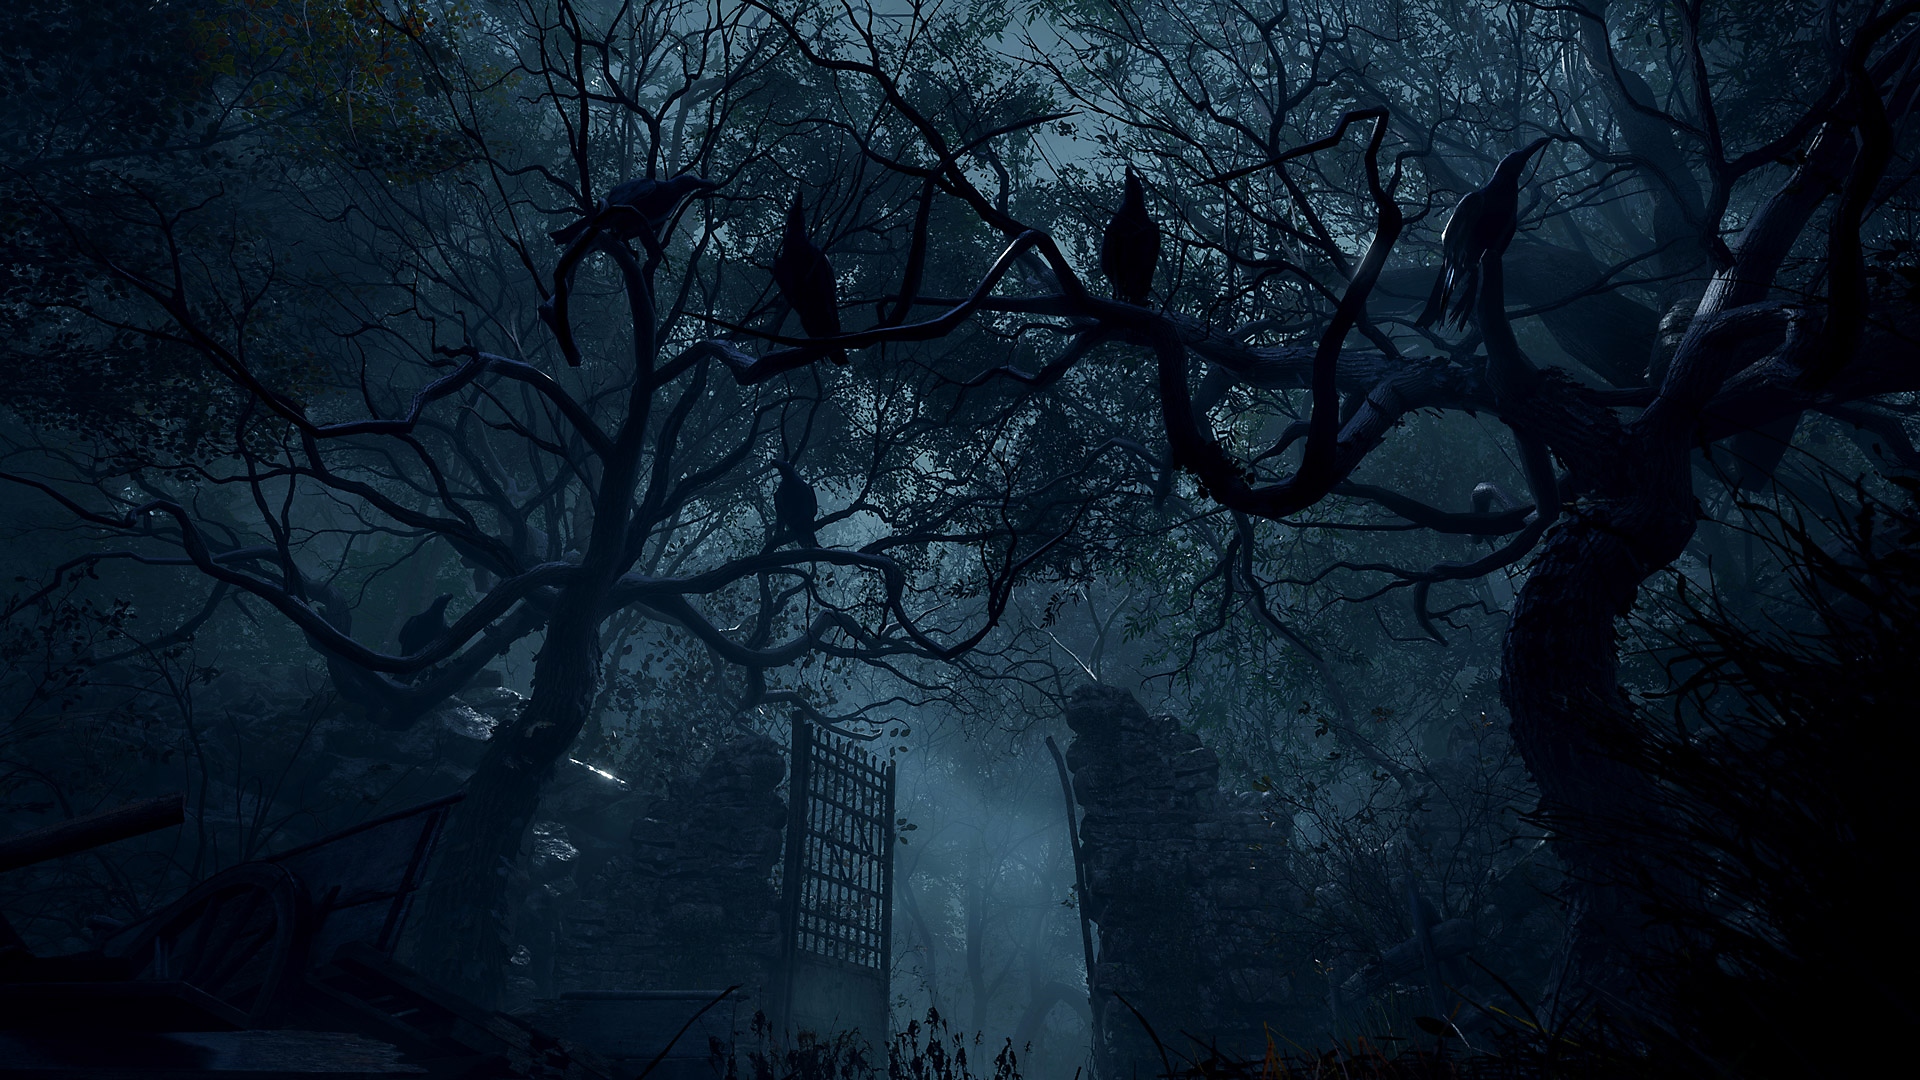 Capture d'écran de Resident Evil 4 - de grandes portes de pierre au milieu d'une zone très boisée